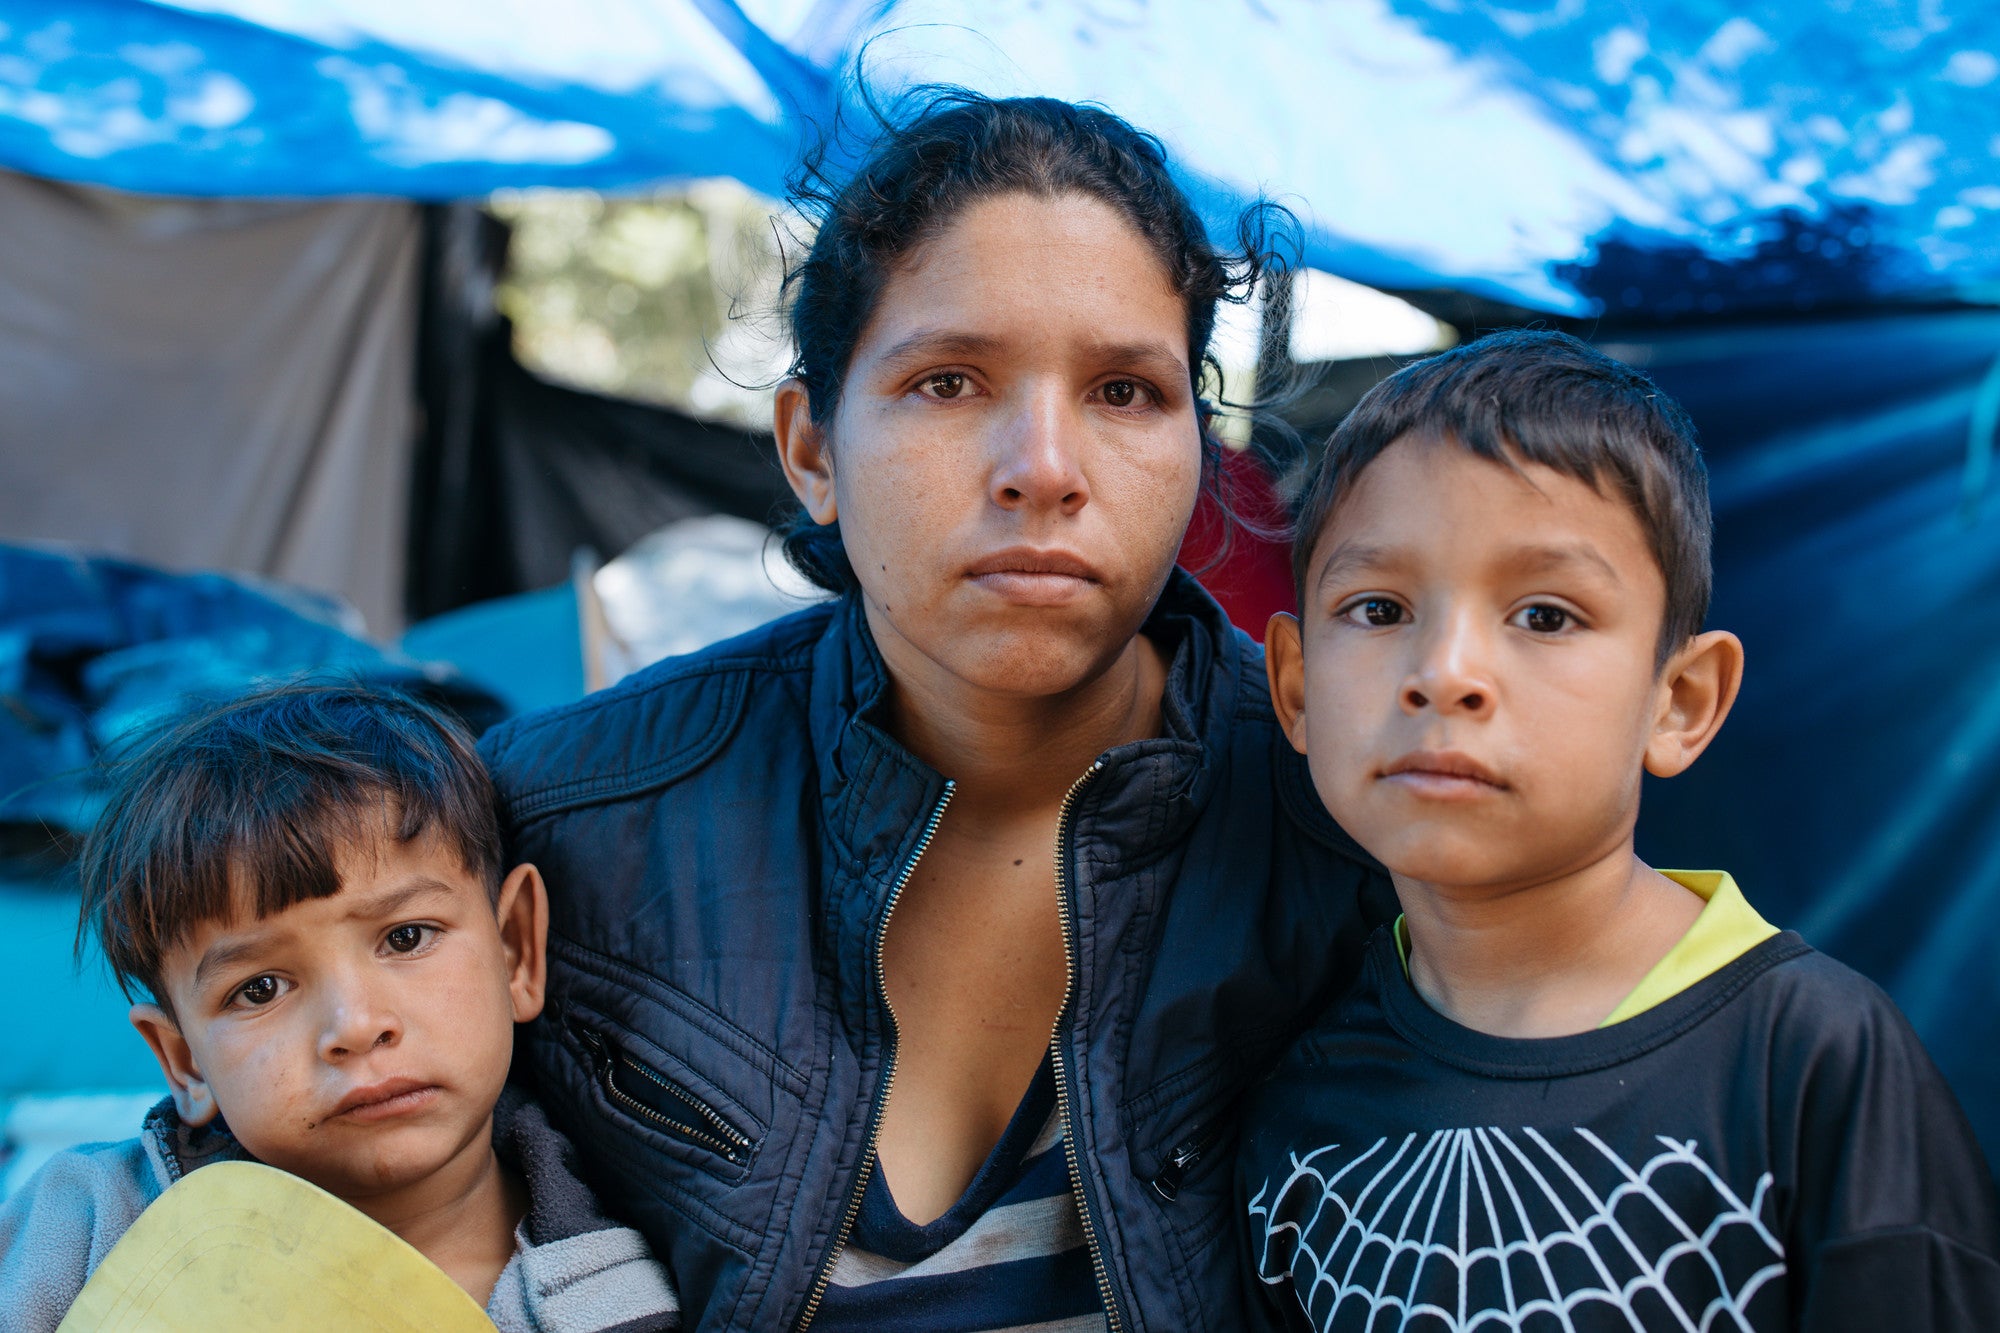 Nazereth Piloira 27, espera perto do Terminal Rodoviário de Carcelen, em Quito, próximo ao assentamento informal de barracas, com seus filhos esperando doações públicas de alimentos